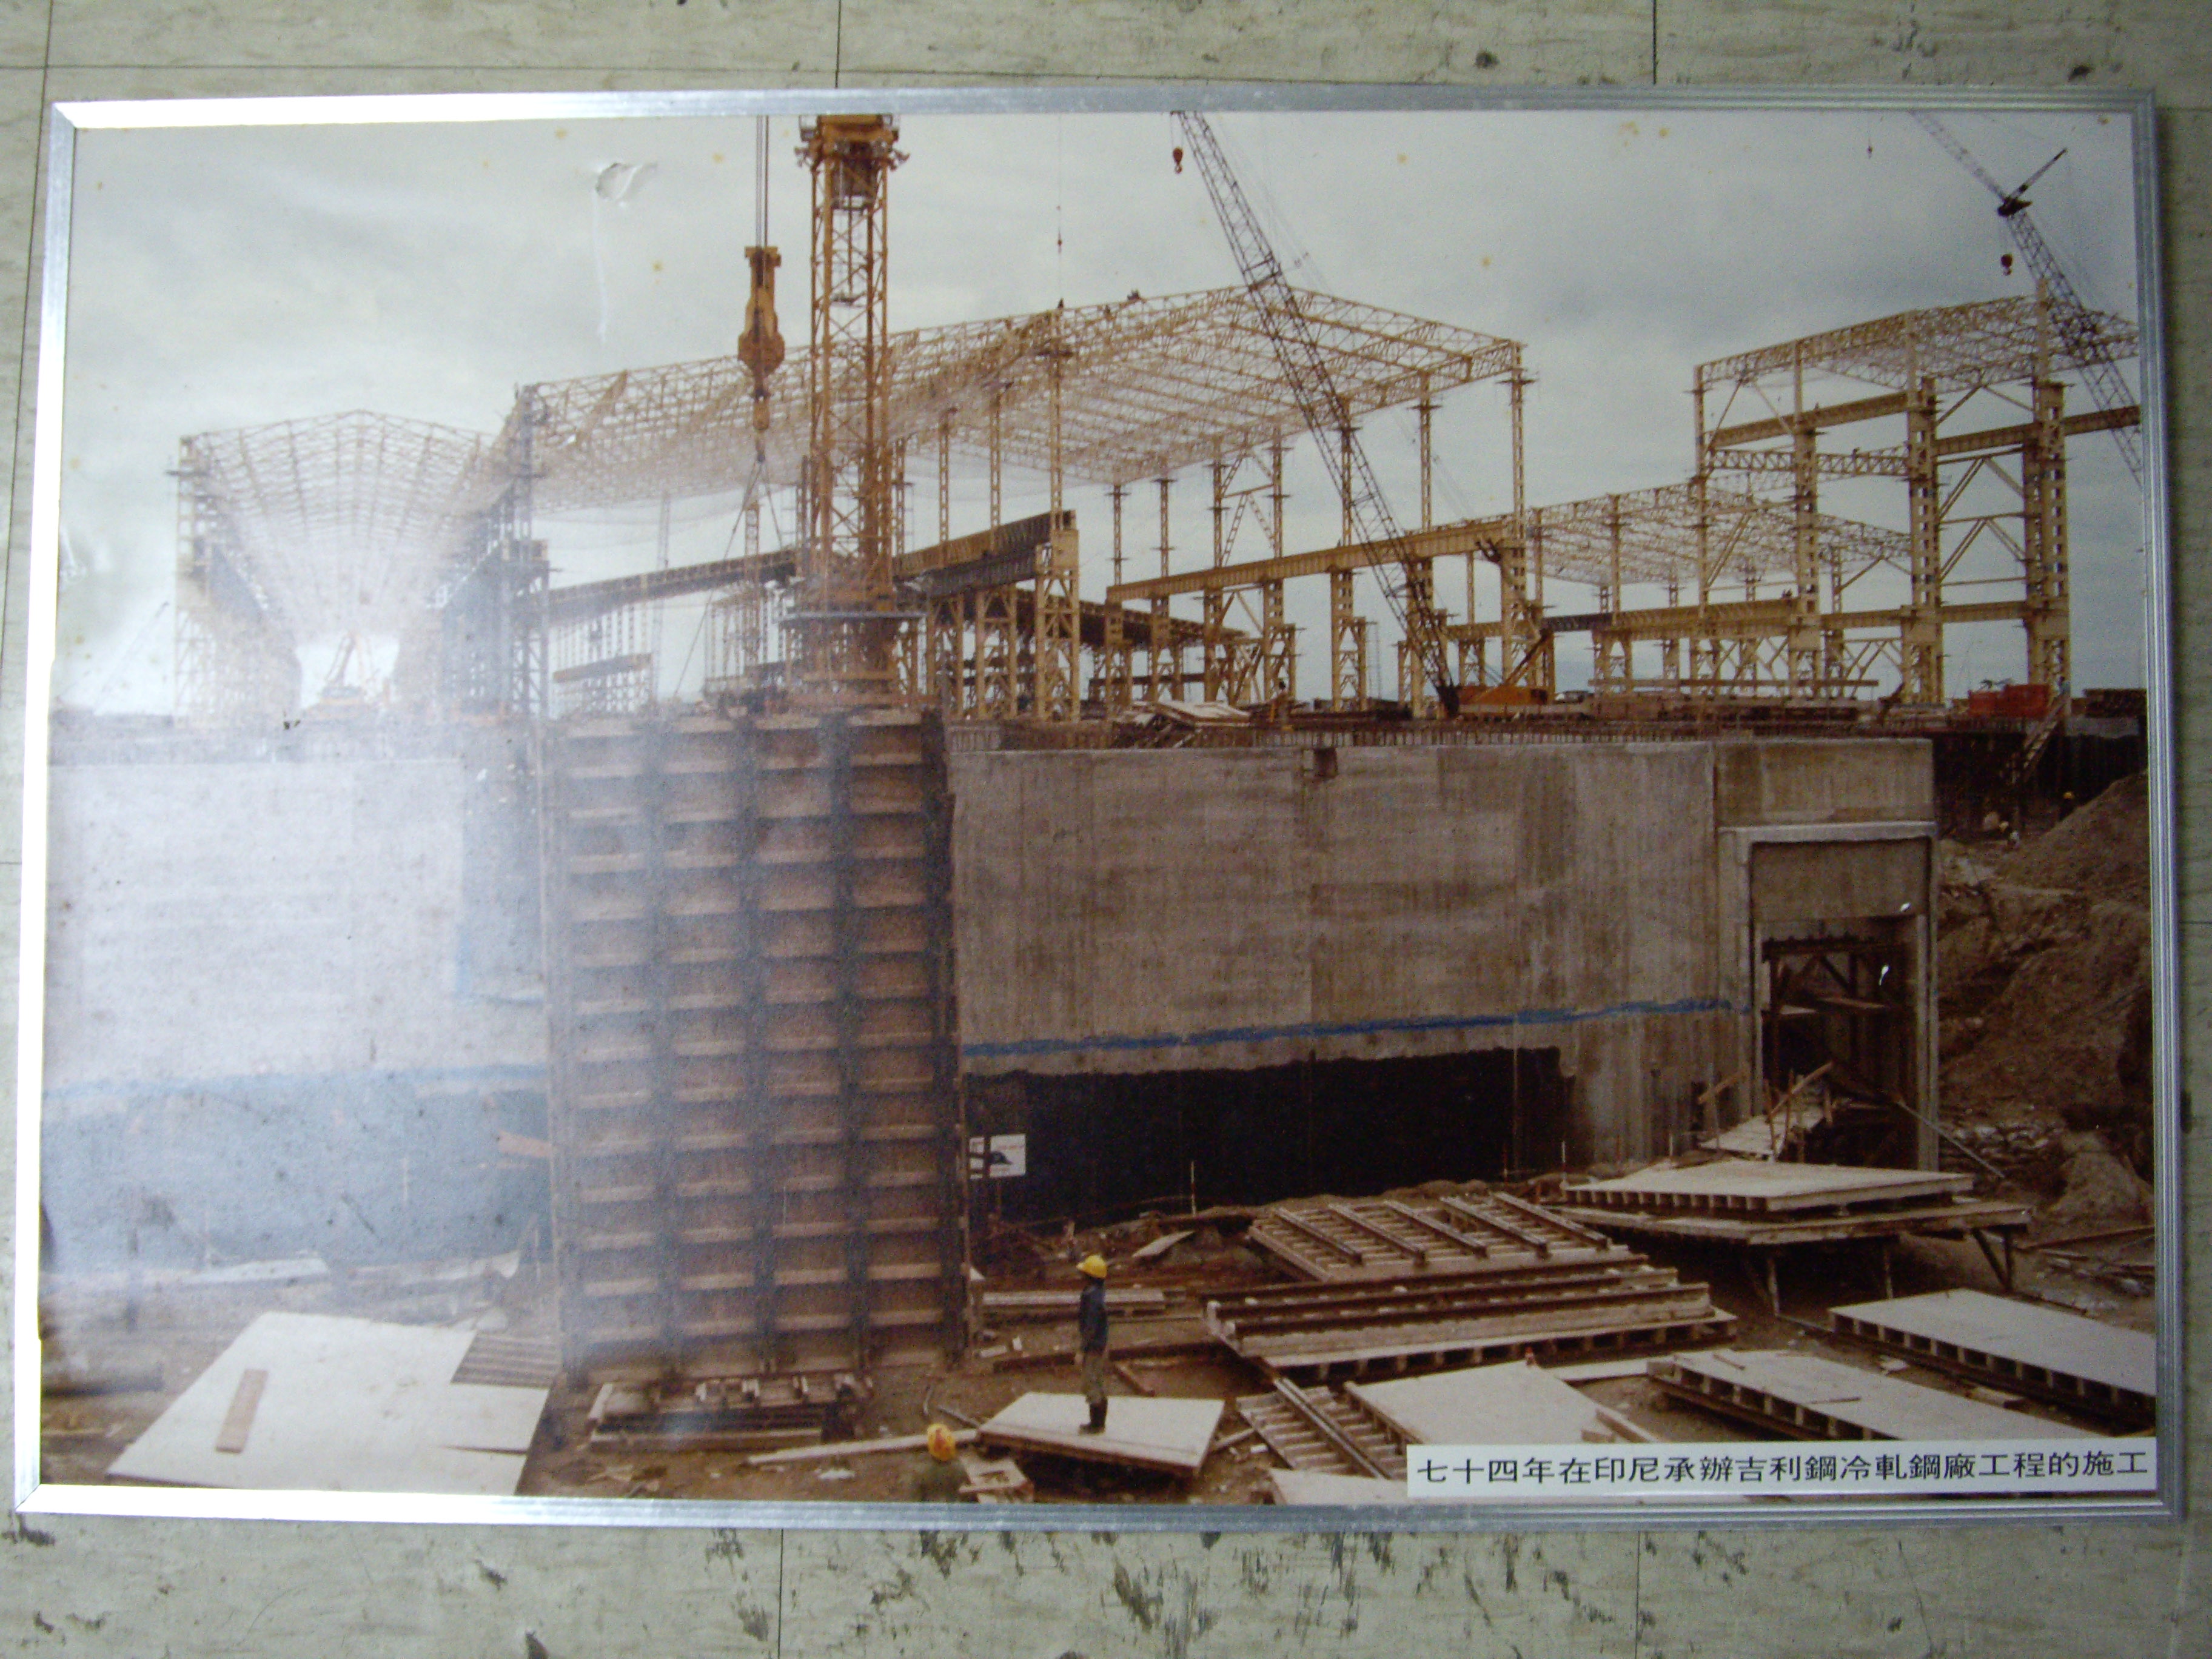 74年印尼吉利鋼冷軋鋼廠工程施工(裱框照)-近照